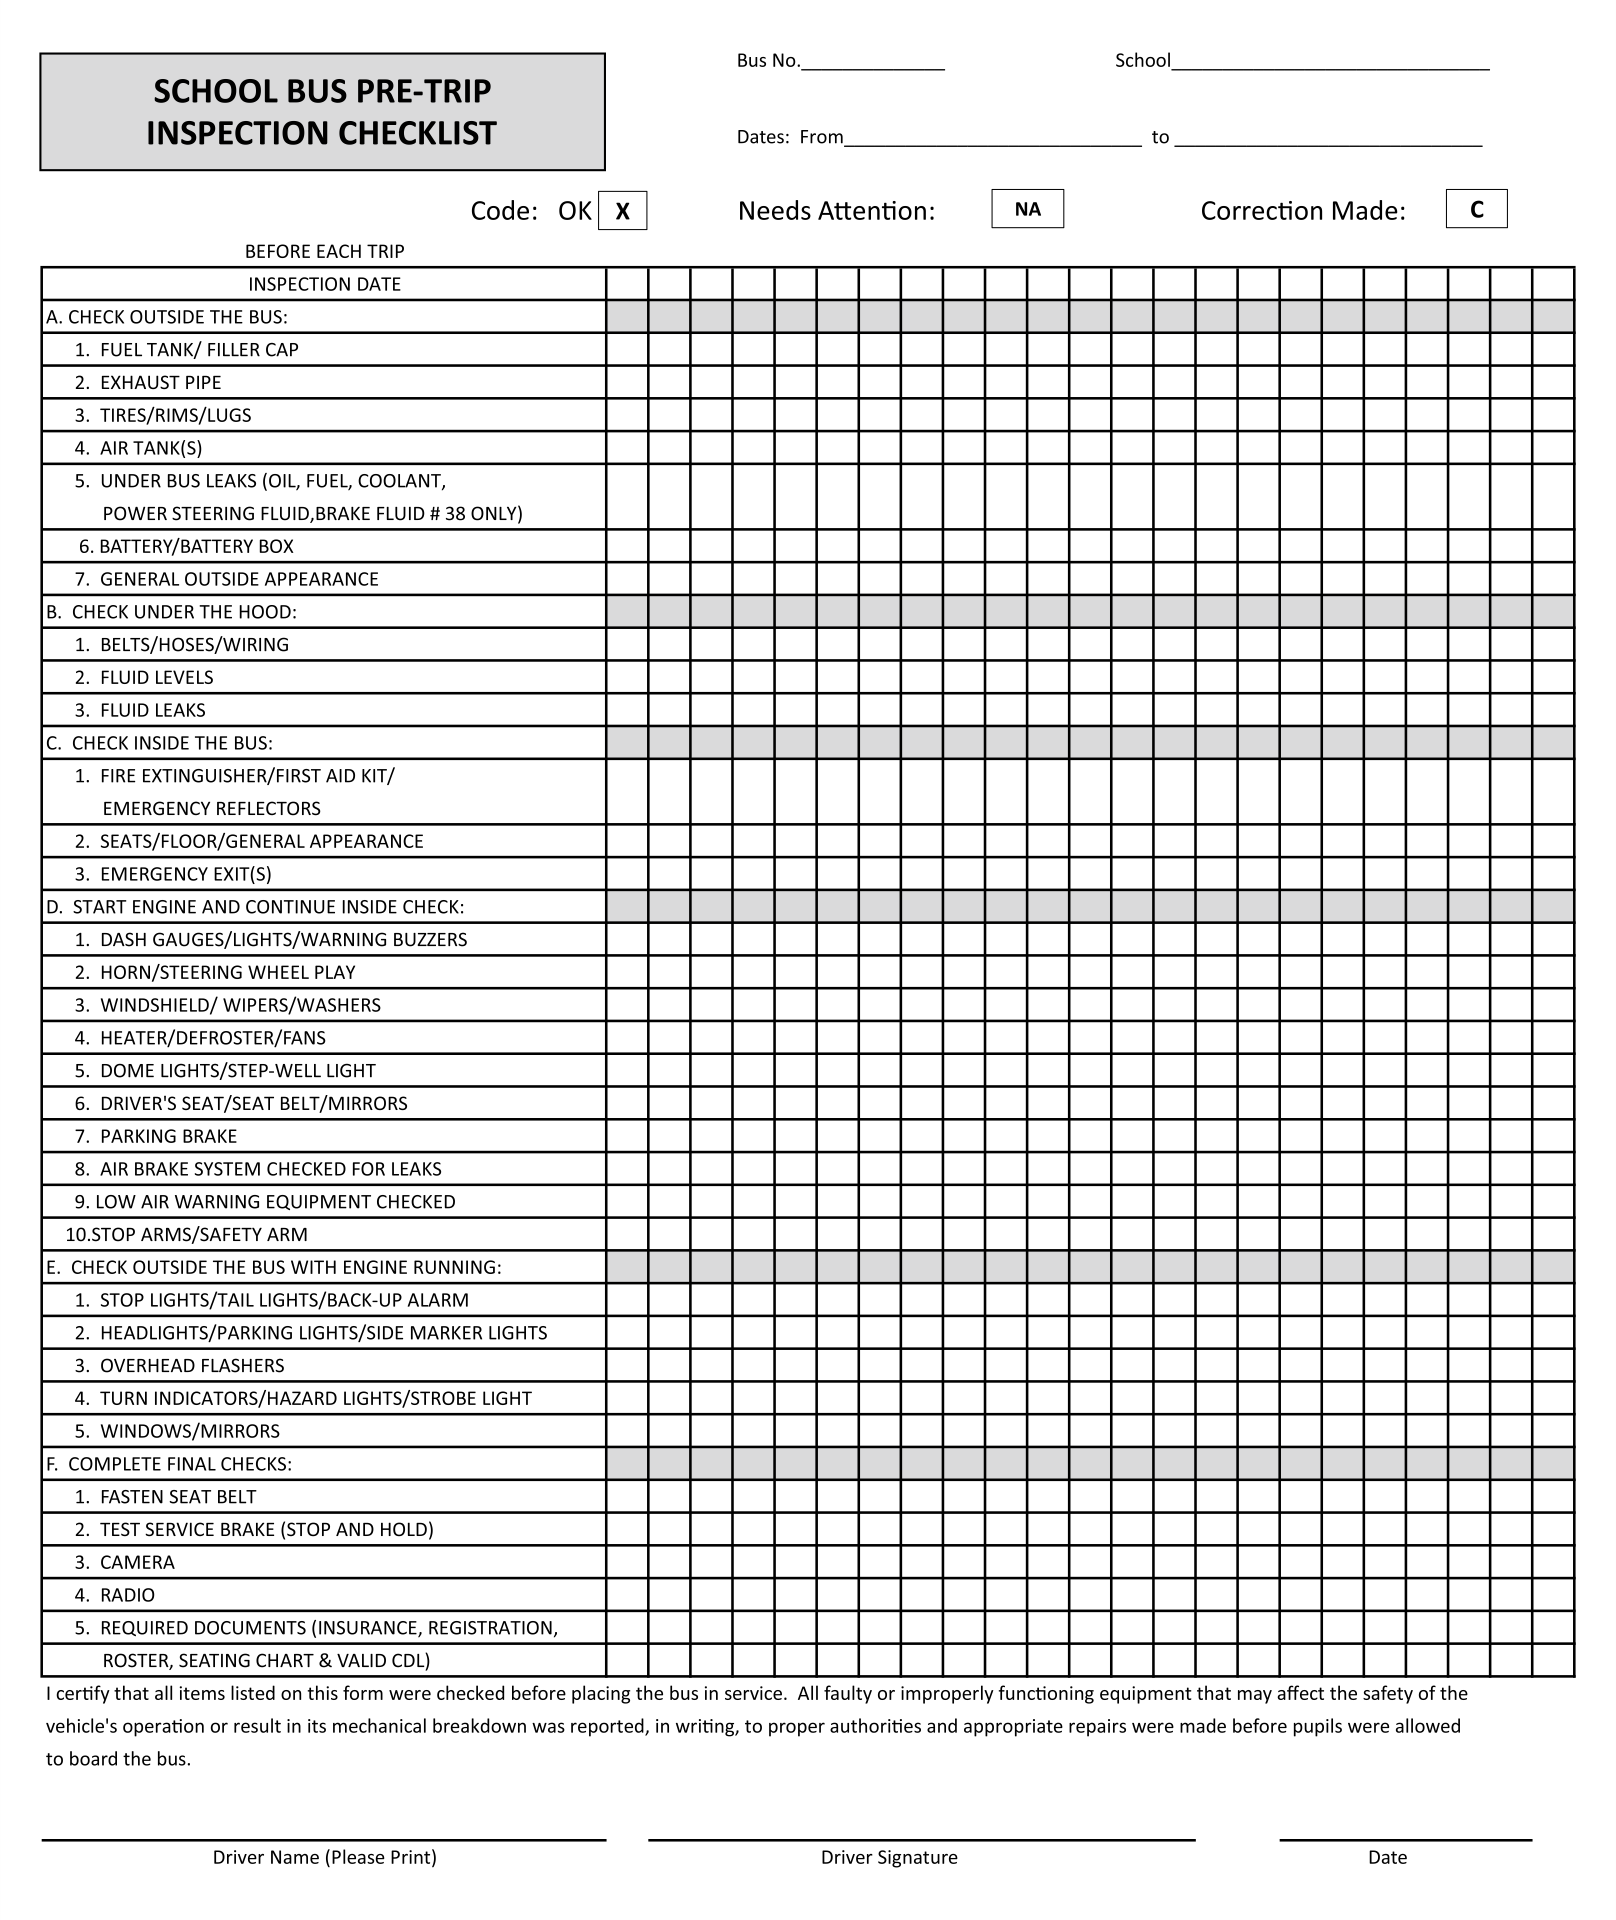 School Bus Pre-Trip Inspection Checklist